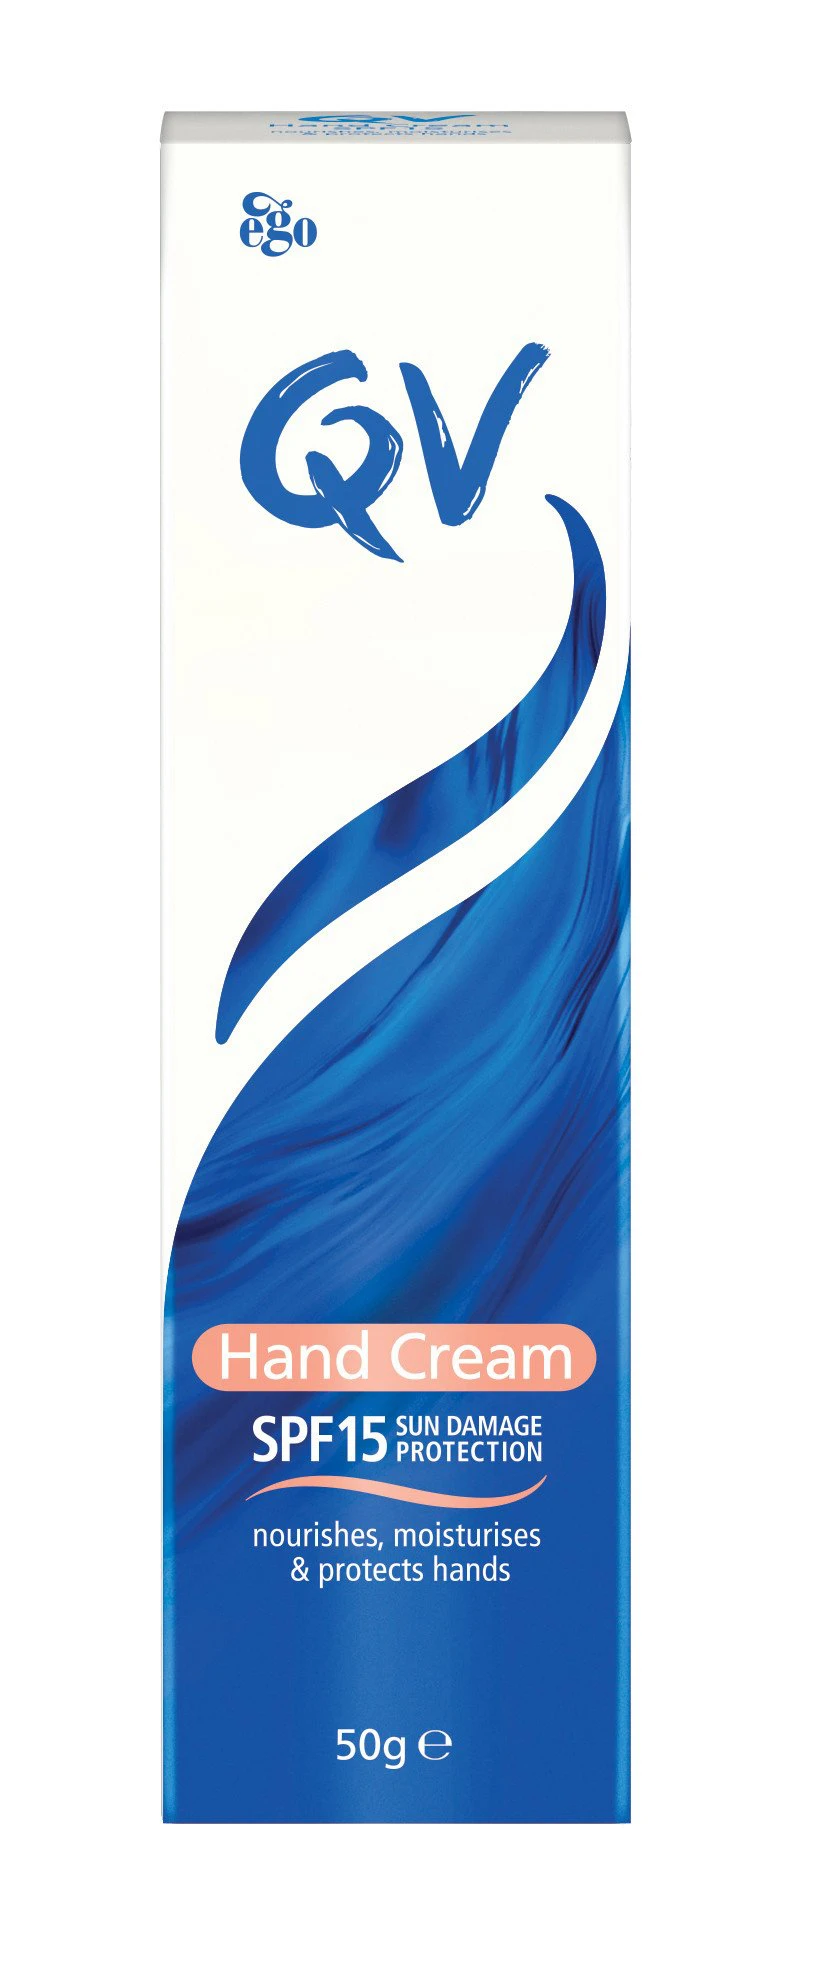 hand cream moisturies hands